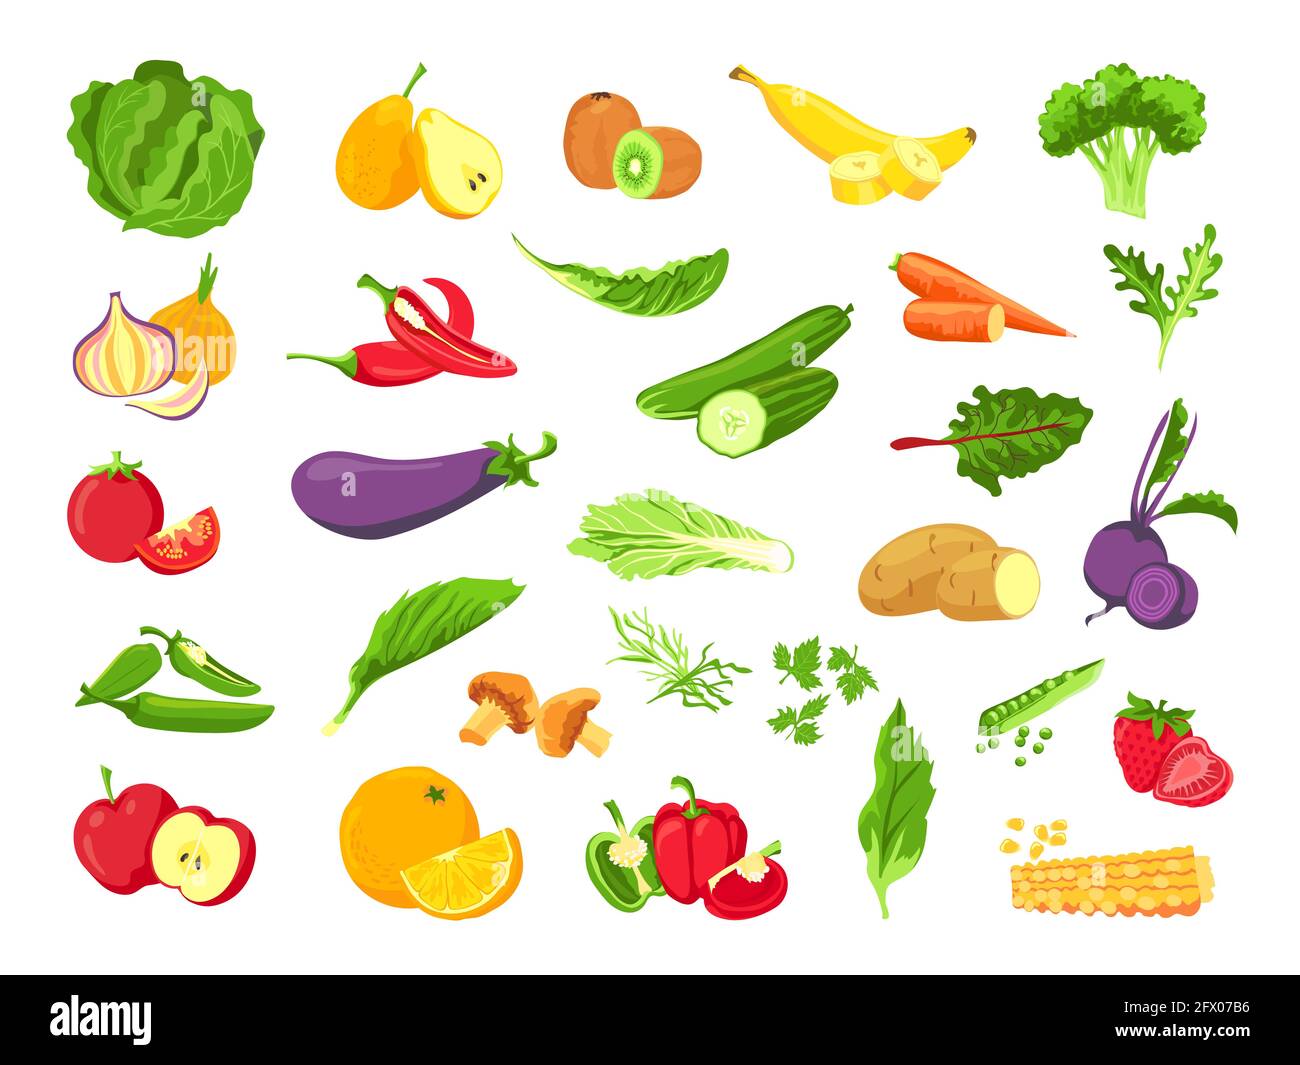 Verdura e frutta. Cibo vegetariano biologico fresco, verdure, insalata, frutta verde, tropicale e frutti di bosco. Insieme vettoriale di prodotti agricoli vegani sani Illustrazione Vettoriale